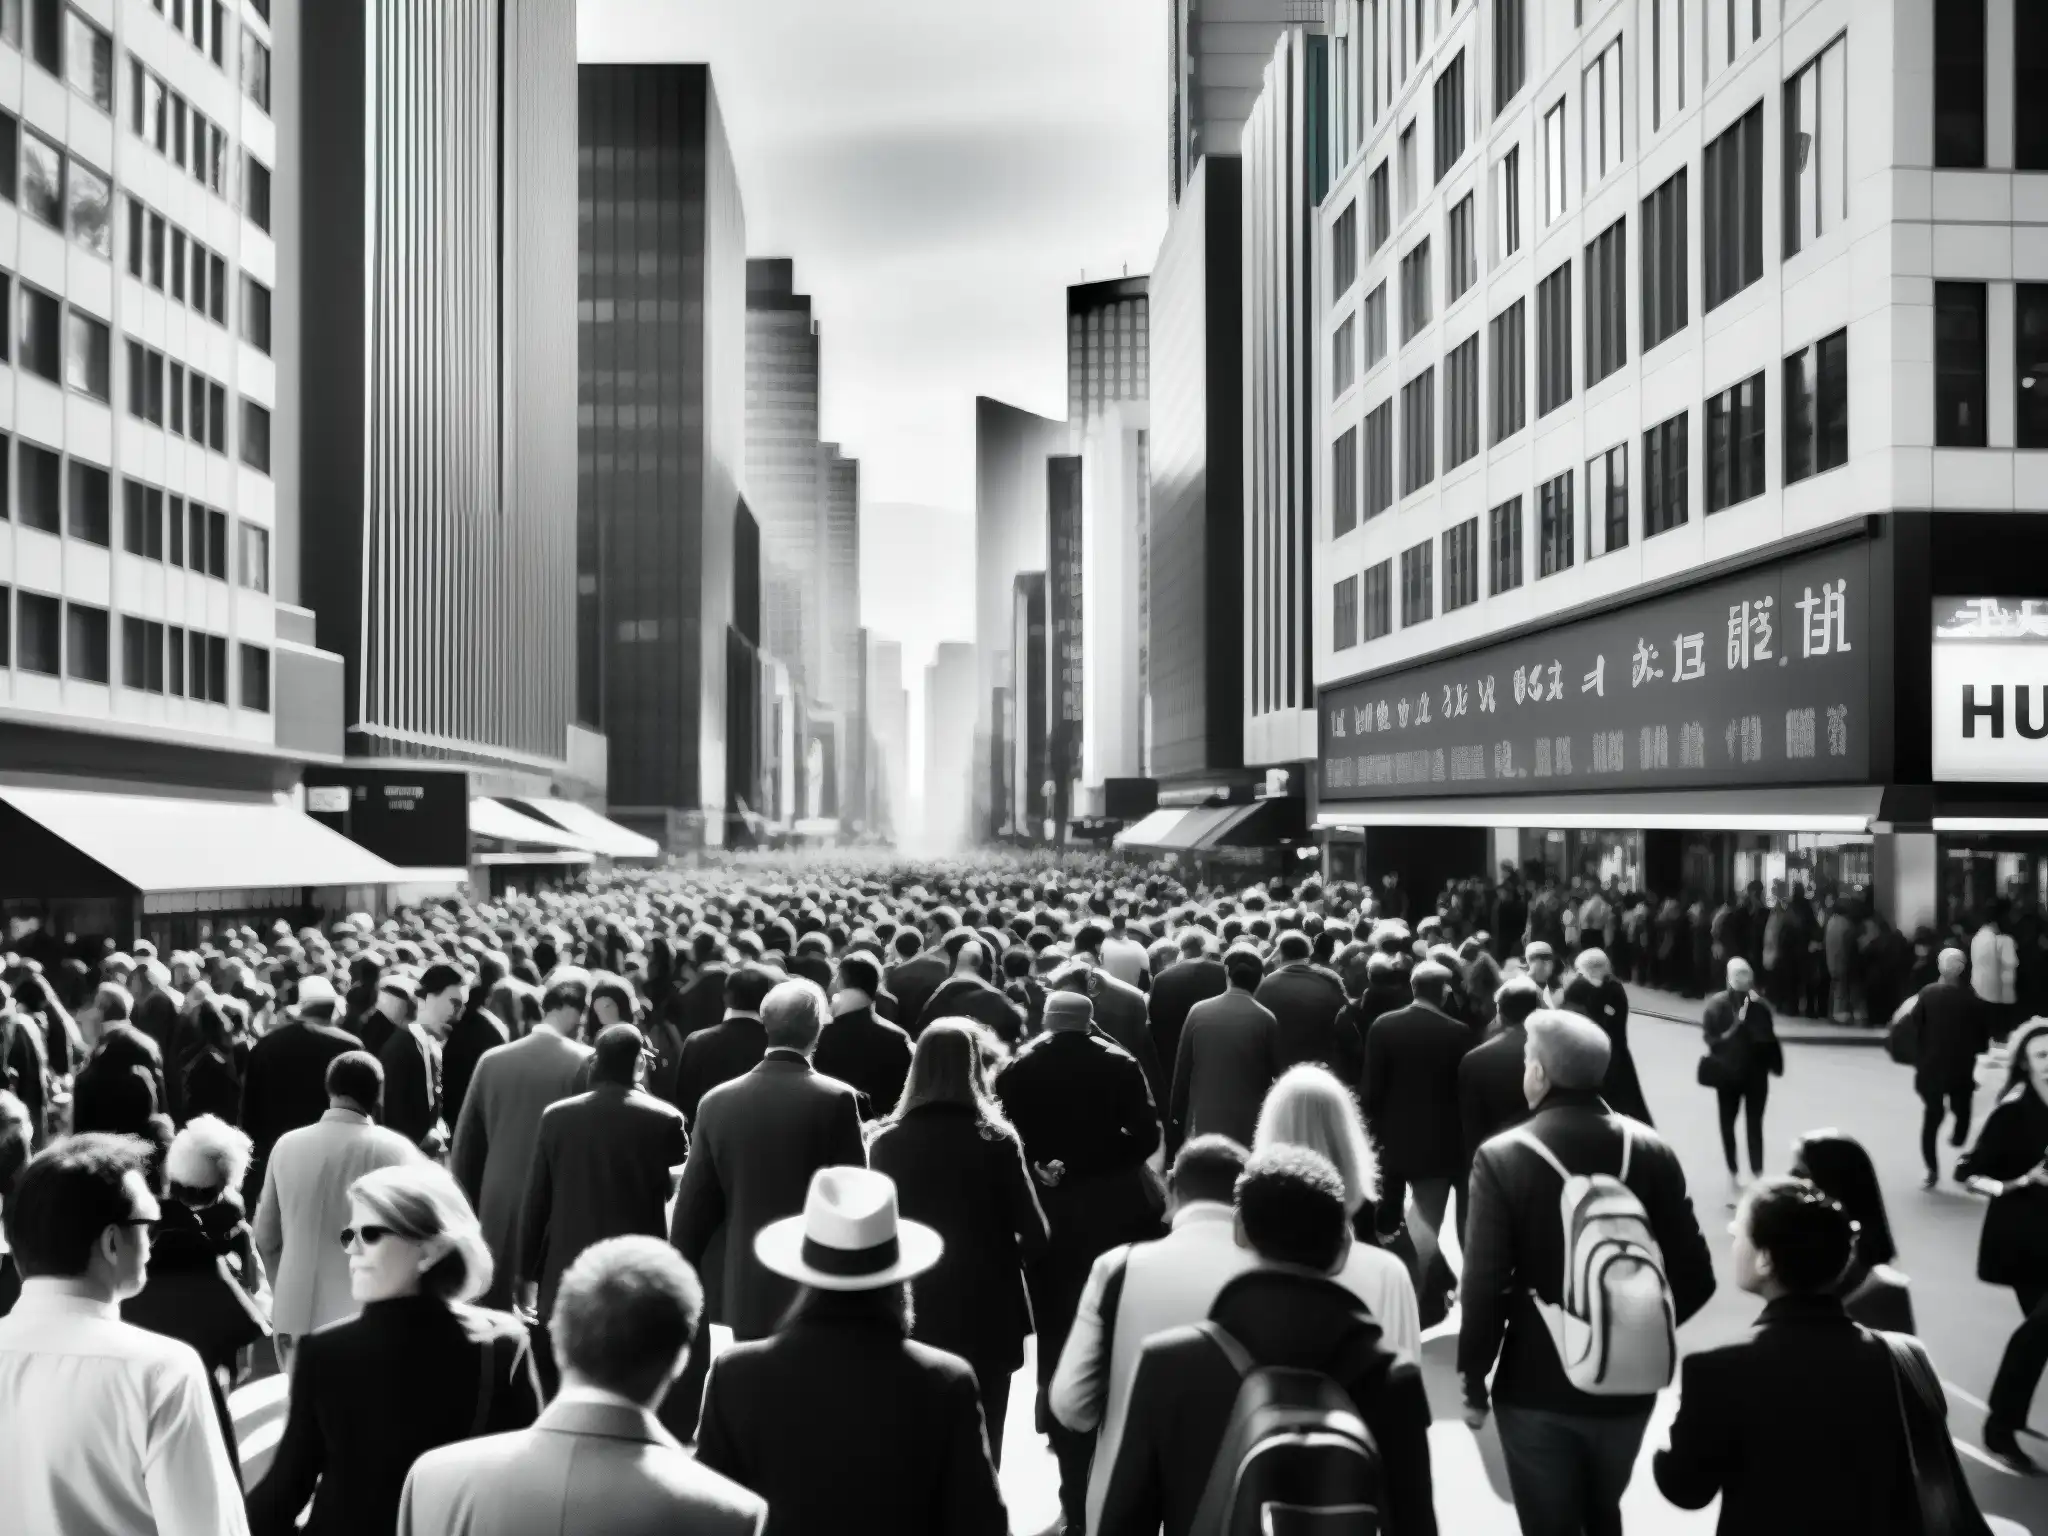 Una fotografía en blanco y negro de una concurrida calle de la ciudad, reflejando la vida urbana y la complejidad de la sociedad